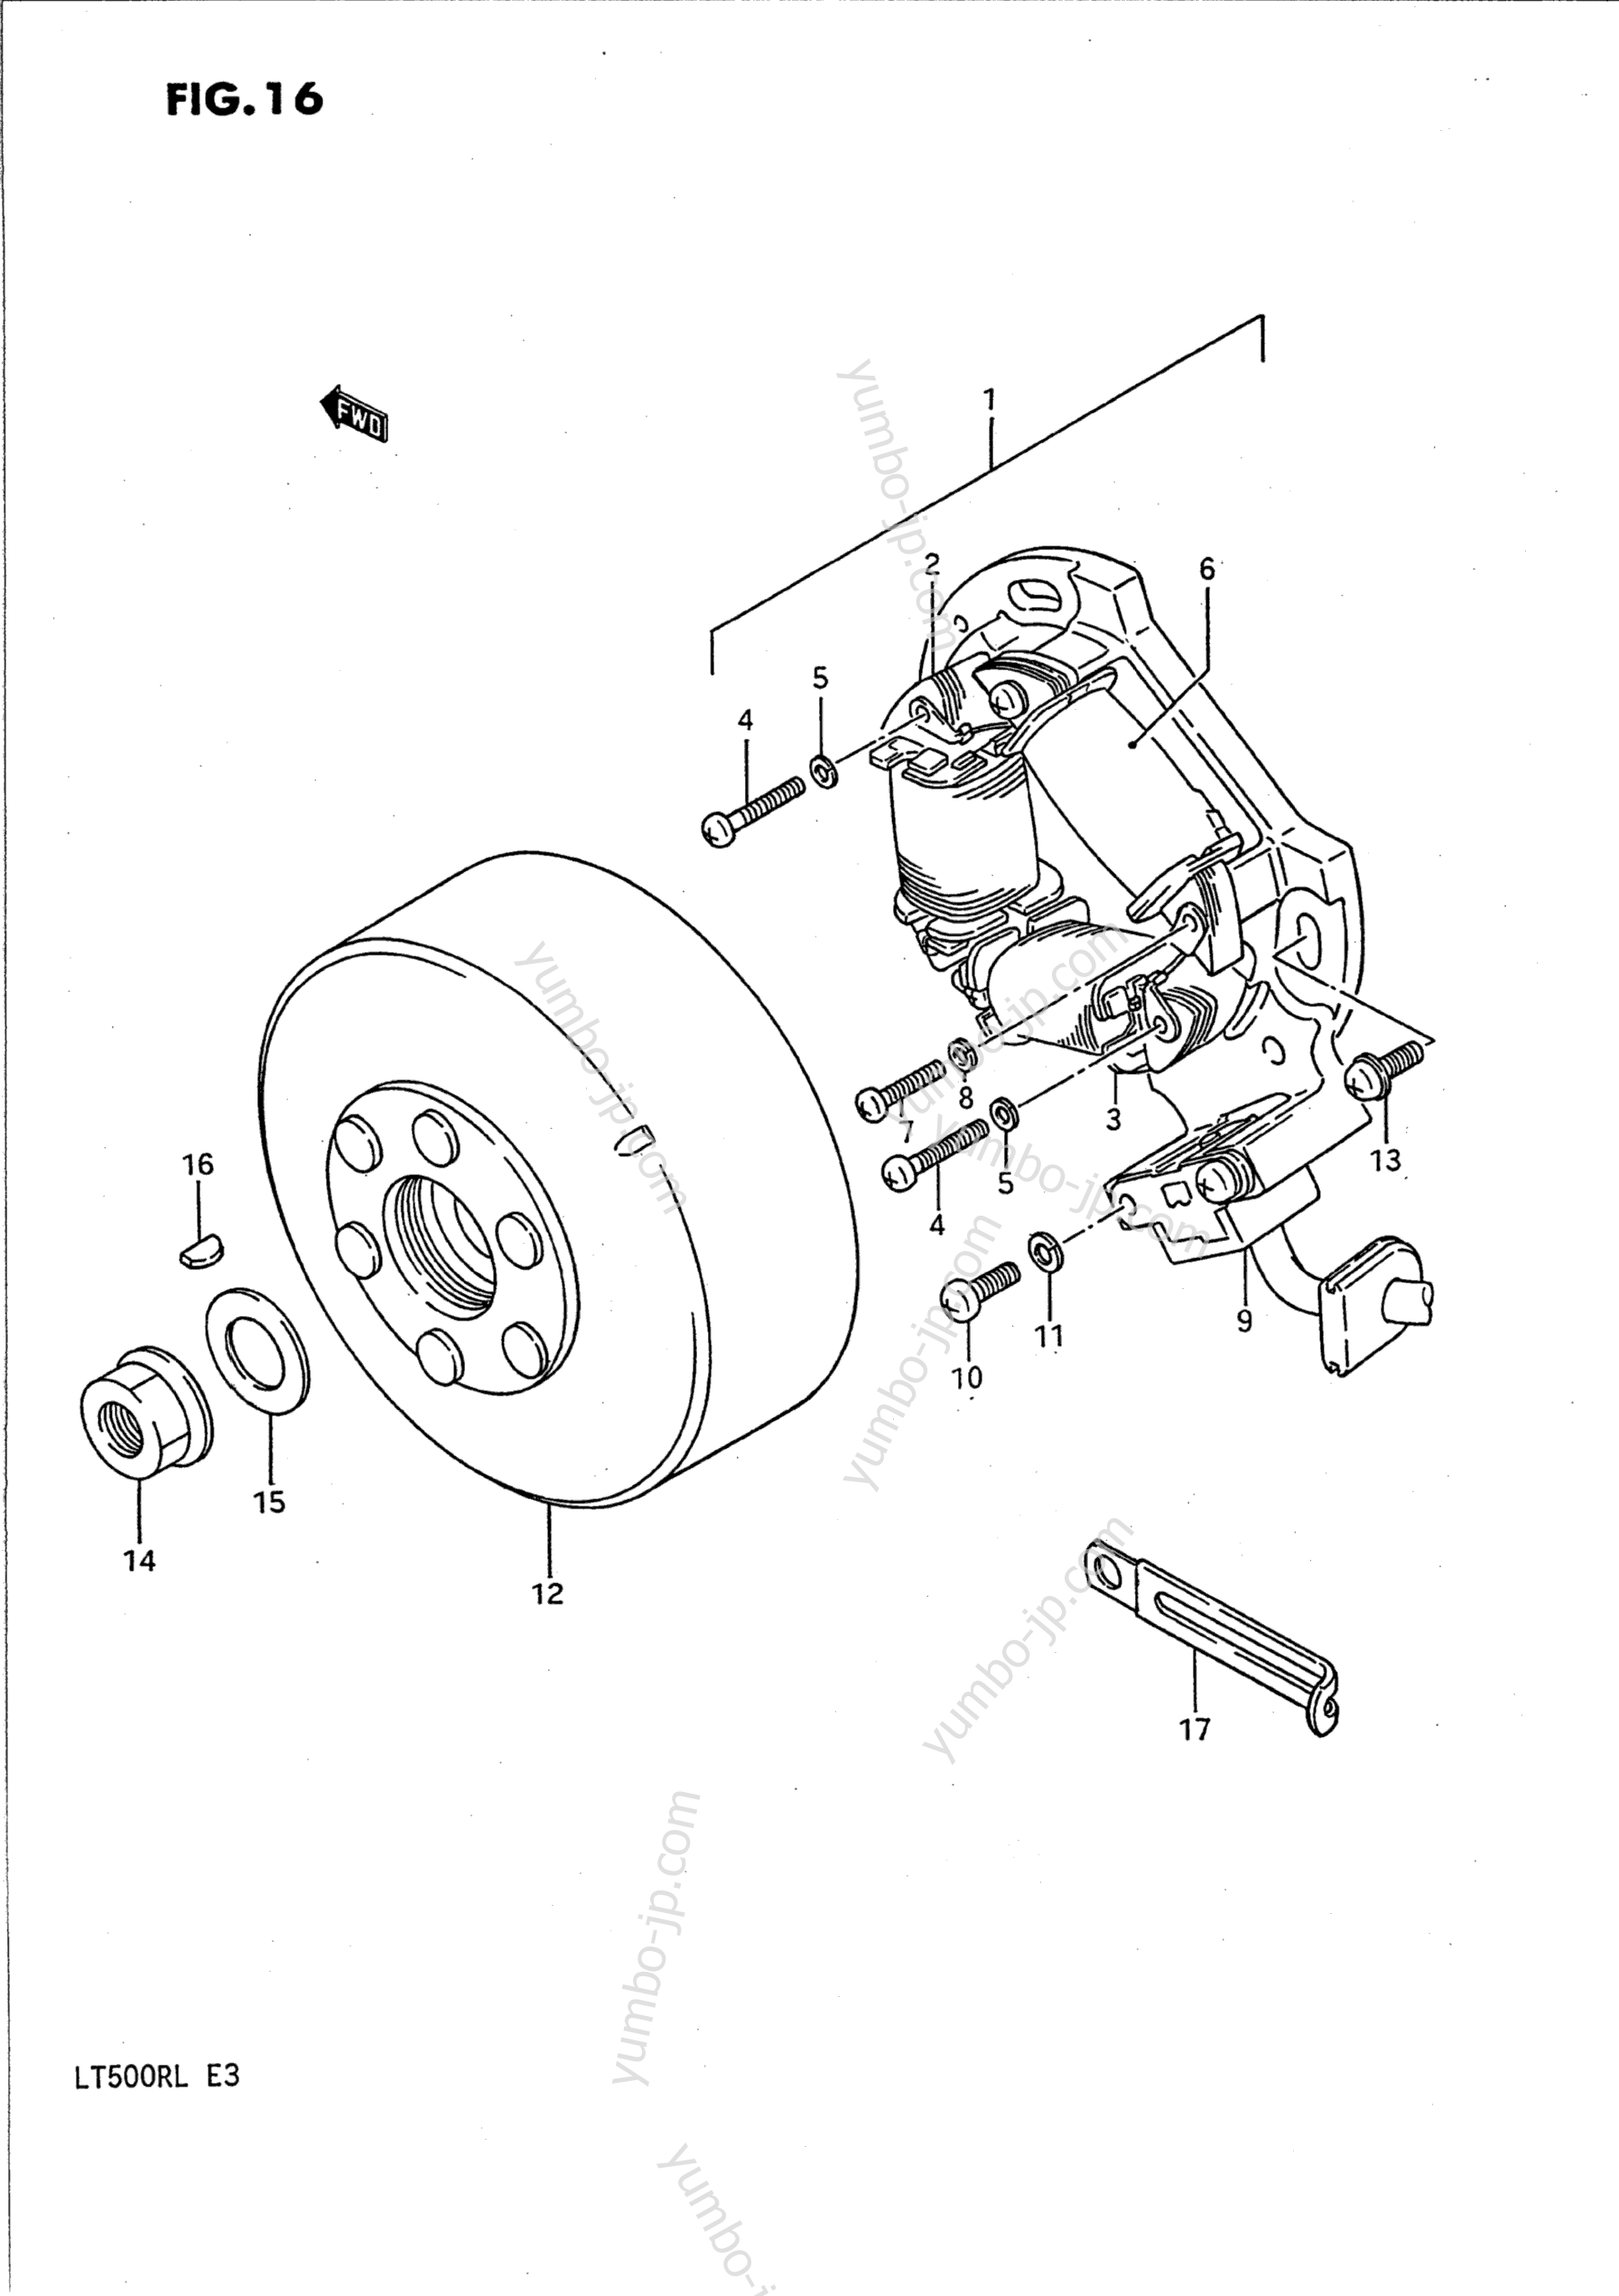 MAGNETO for ATVs SUZUKI QuadRacer (LT500R) 1989 year